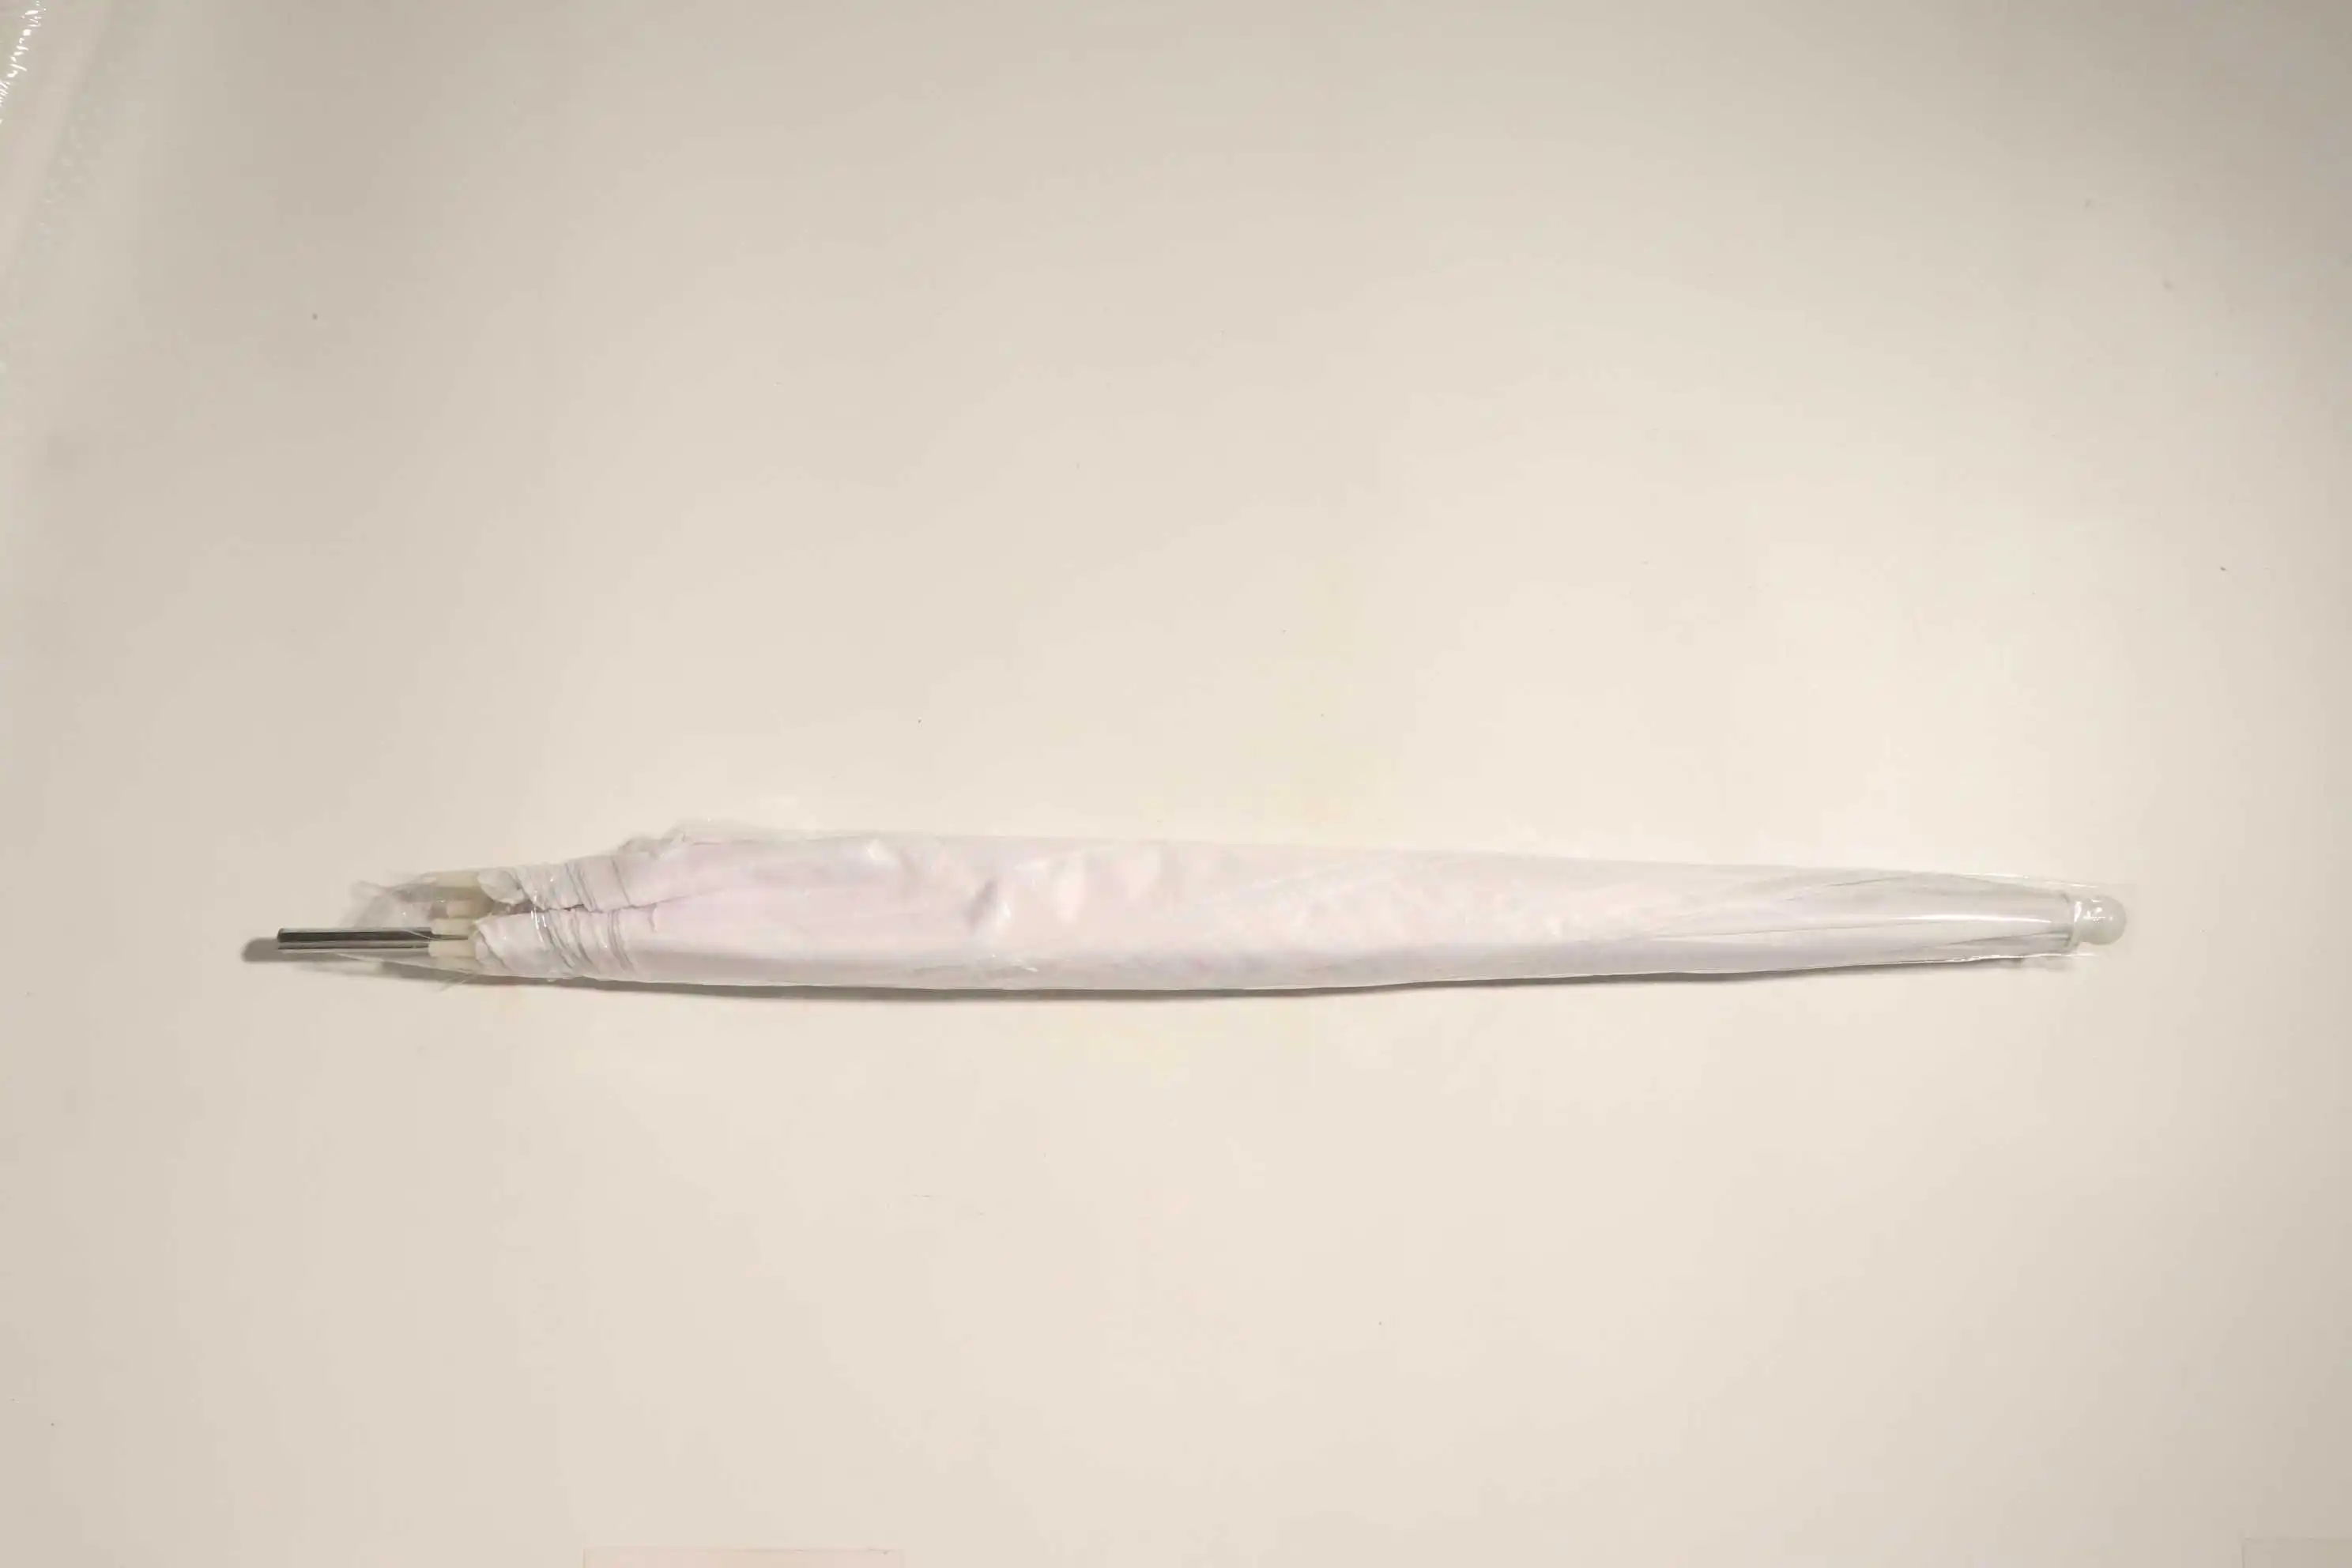 Фотография Профессиональная студия мягкий полупрозрачный белый люминесцентный зонтик для студии вспышка лампа освещение фотографический аппарат